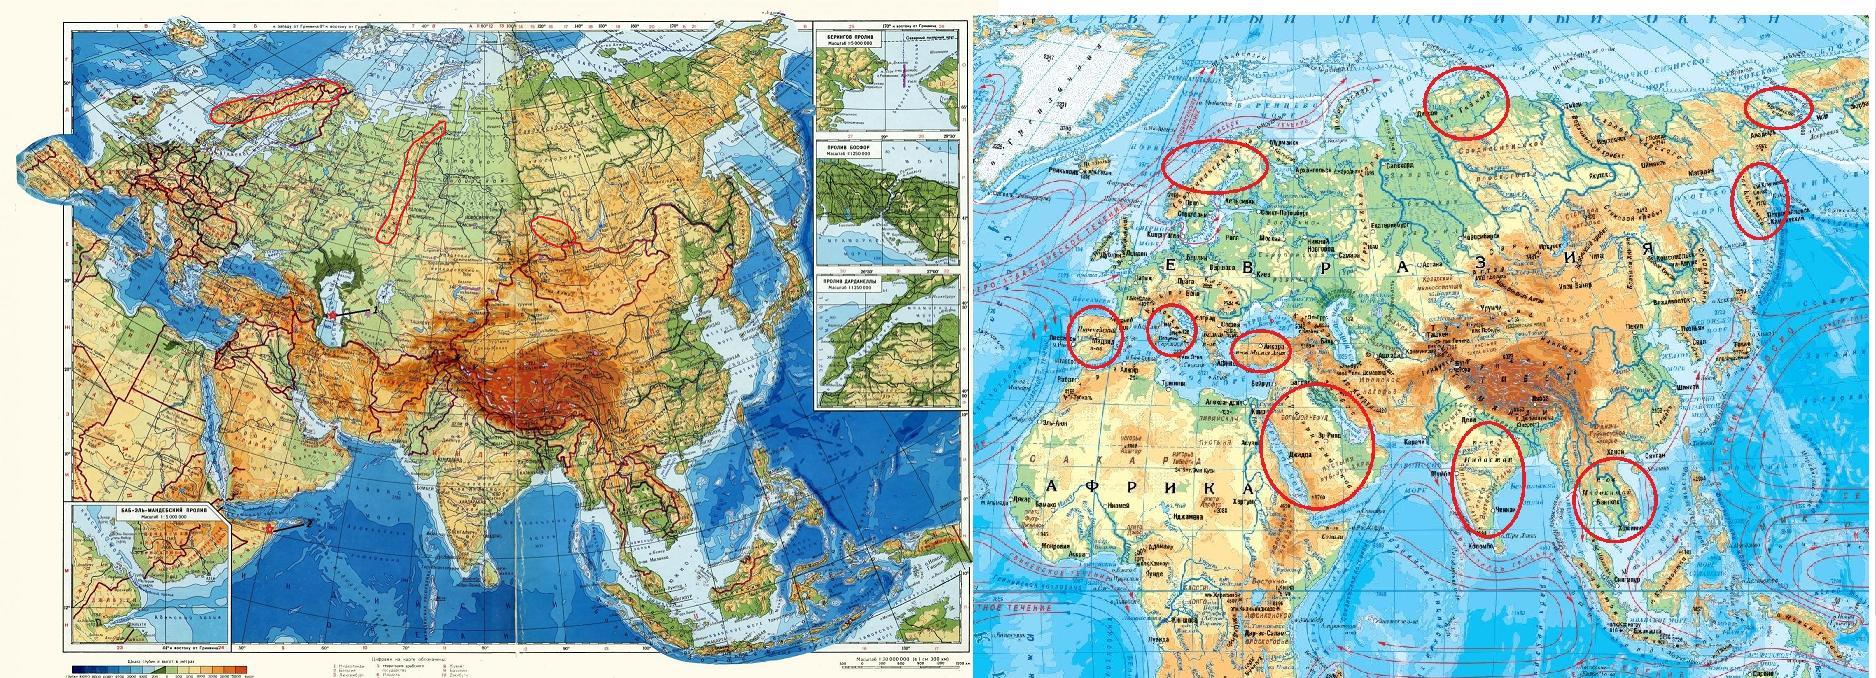 Все моря омывающие евразию. Евразия занимает. Граница Европы и Азии на карте Евразии. Какре место занимает Евразия по площади. Объединенная Евразия.